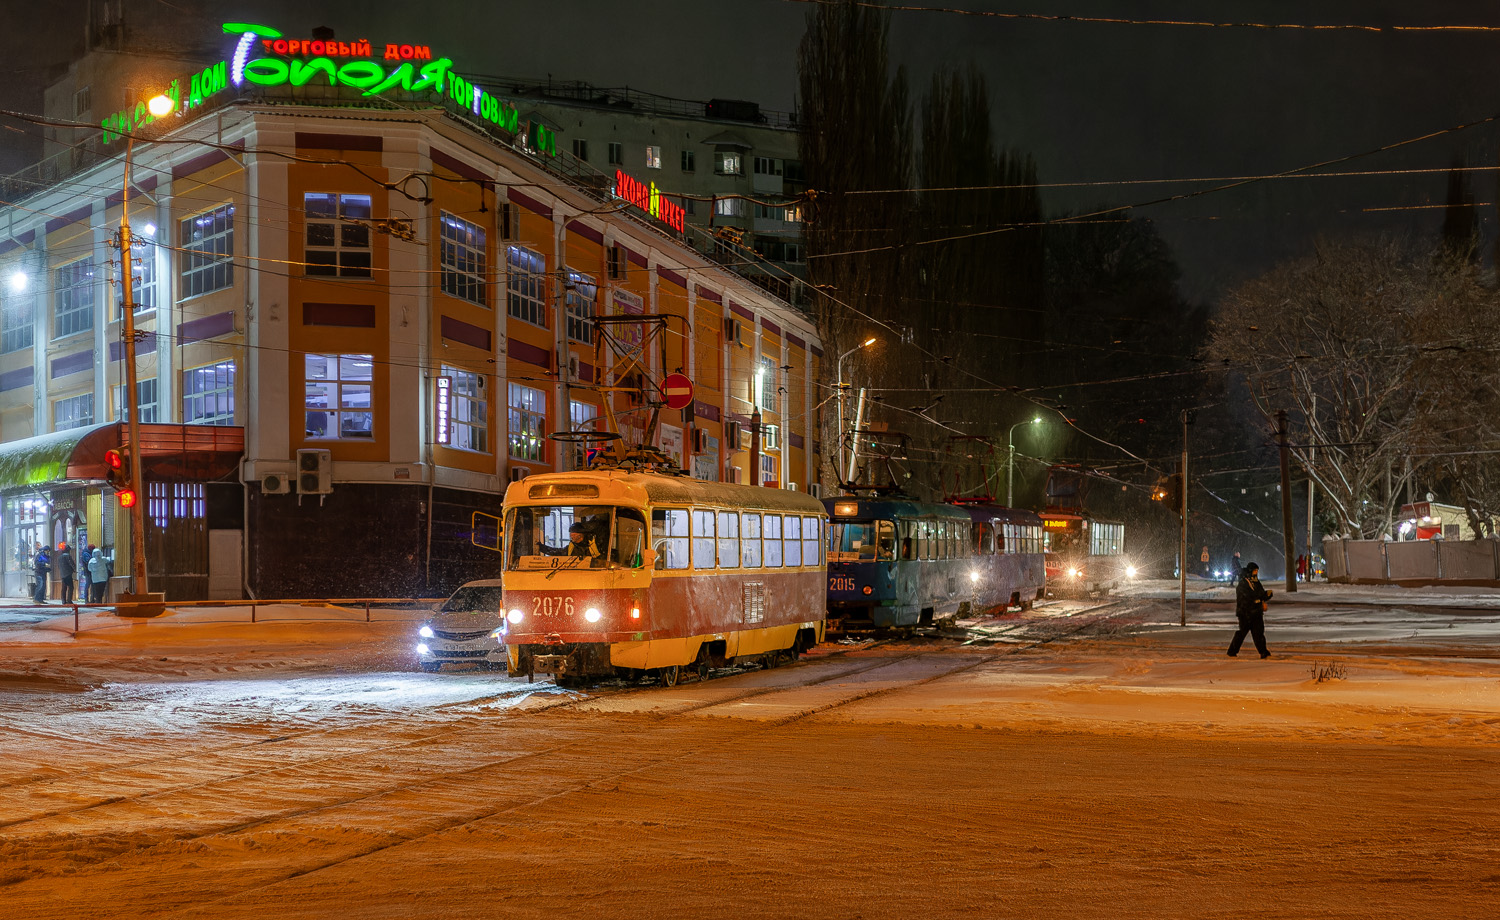 Уфа, Tatra T3D № 2076